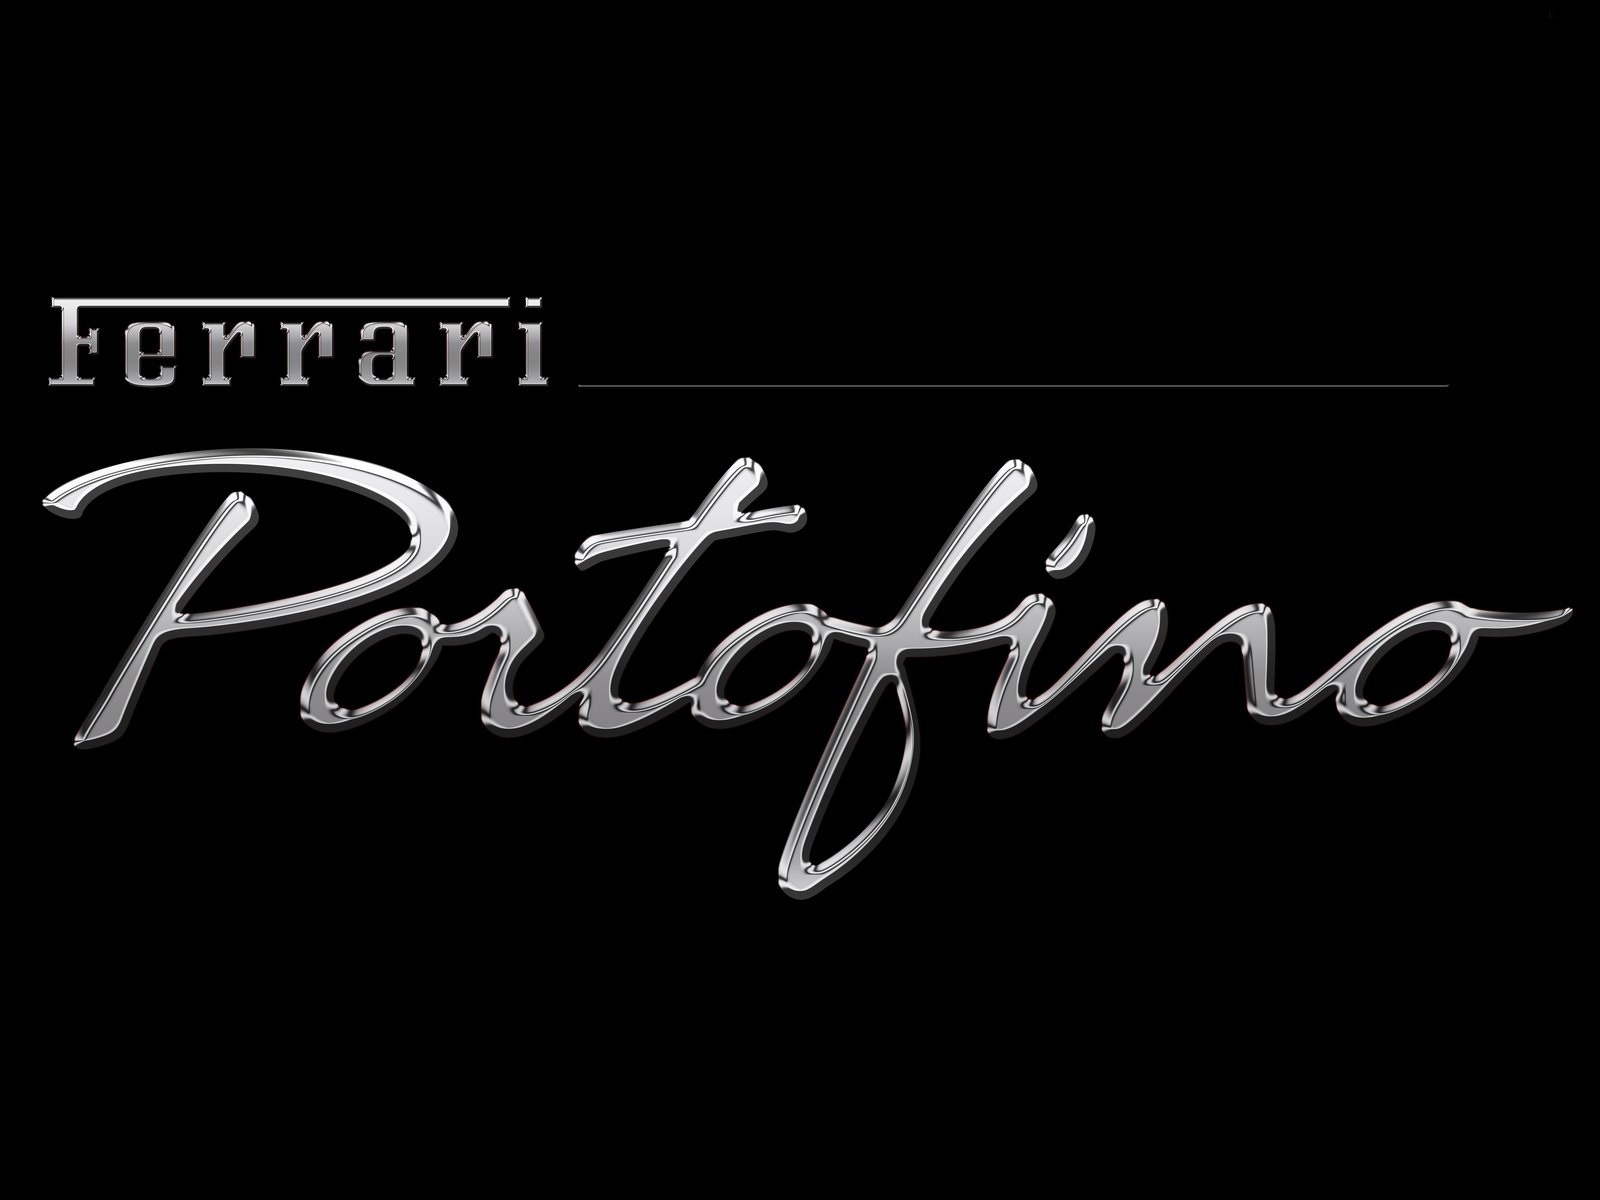 Ferrariszubjektiv.blog.hu-Portofino-08